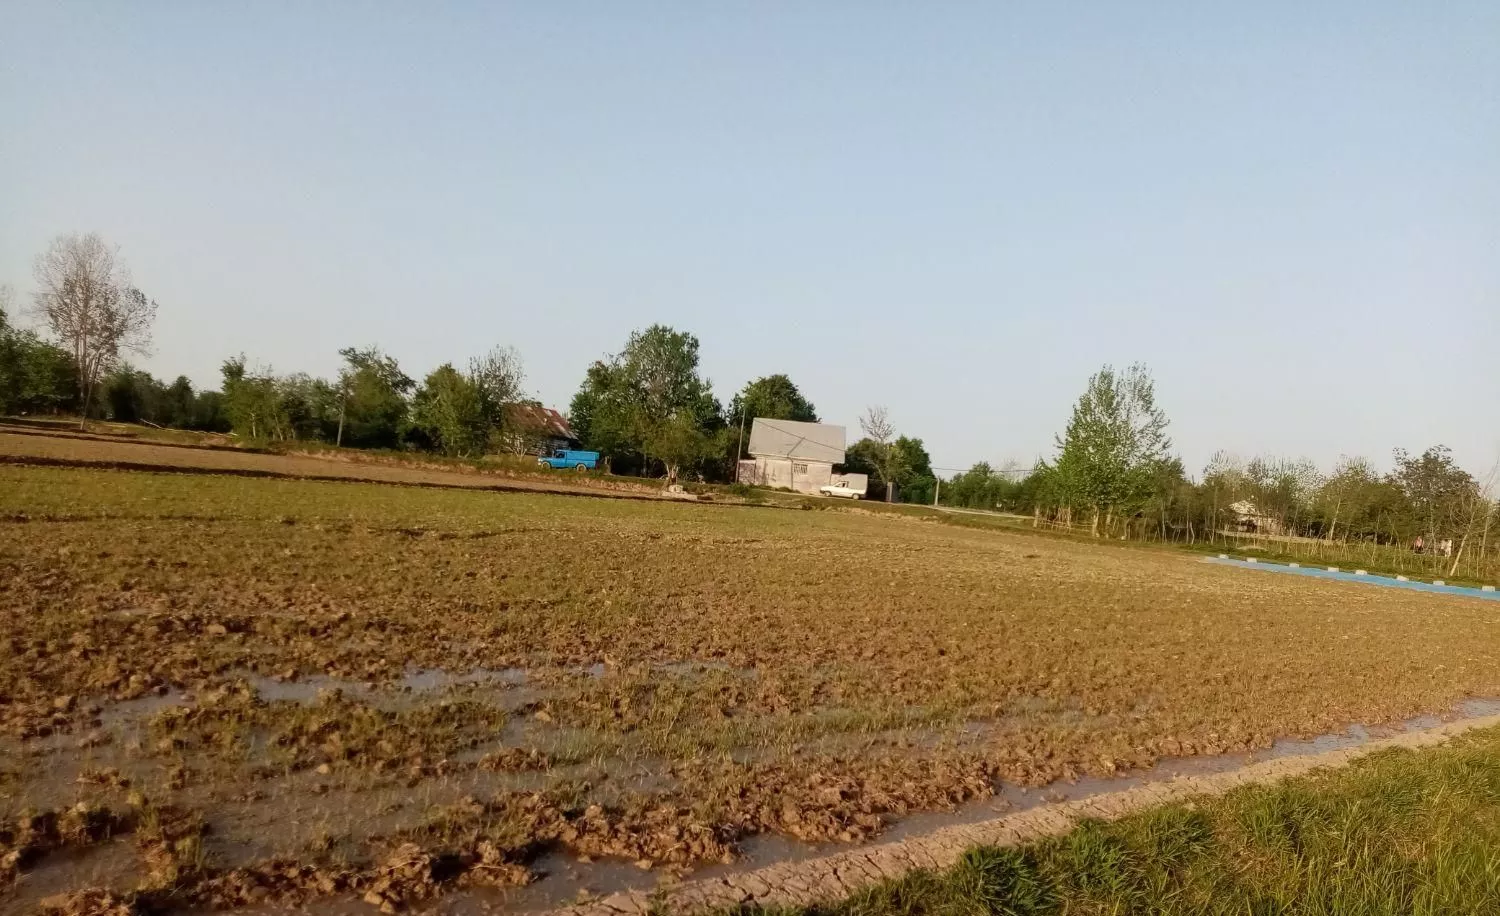 زمین زراعی بر جاده یک تکه.